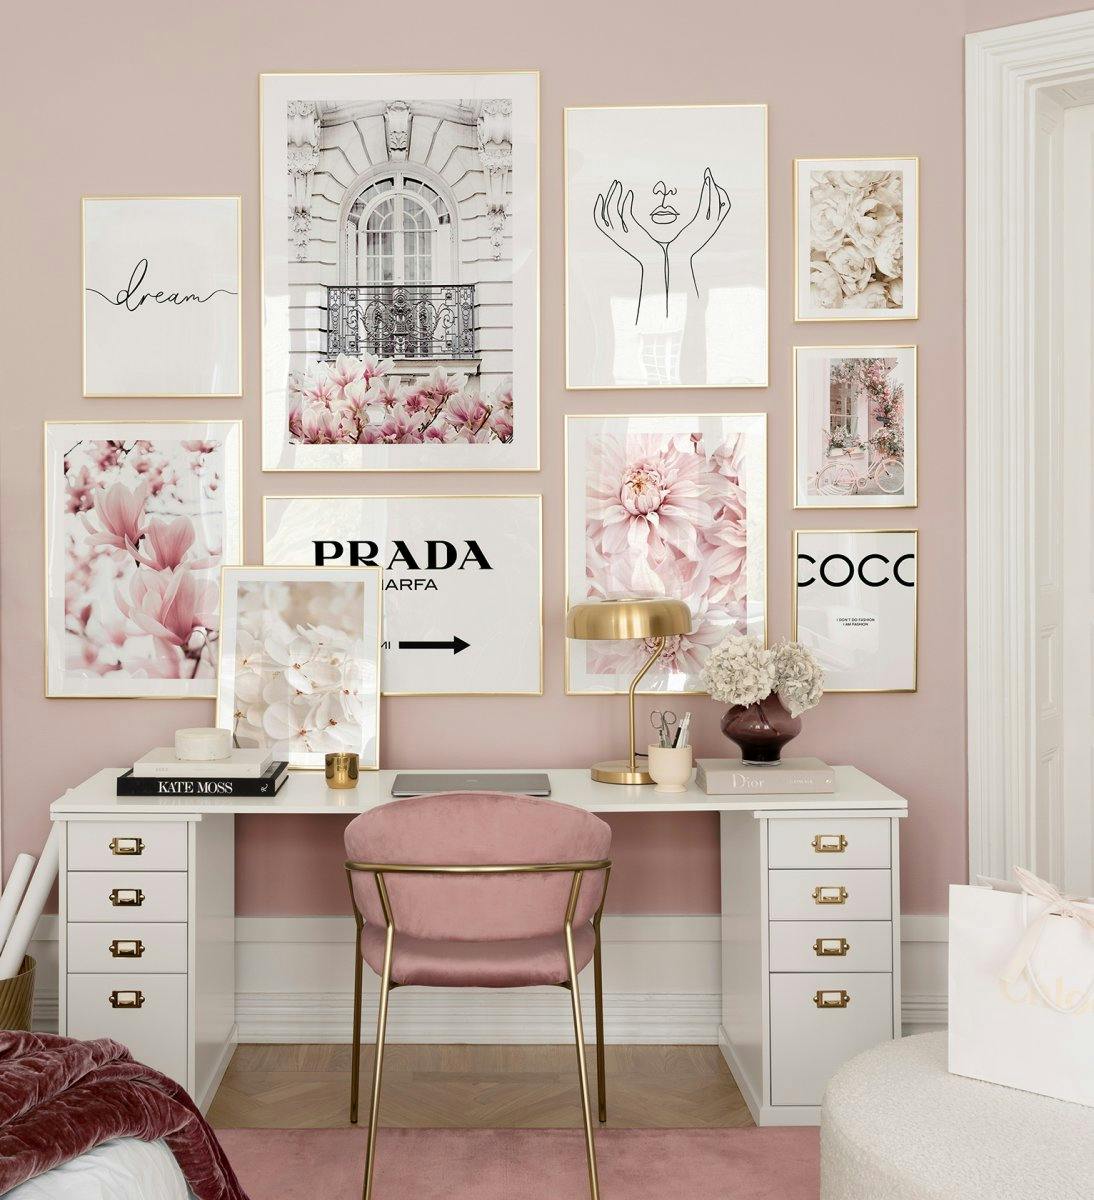 고급 패션 브랜드가 새겨진 핑크색 갤러리월, 홈 오피스에 안성맞춤인 골드 프레임 포스터액자.